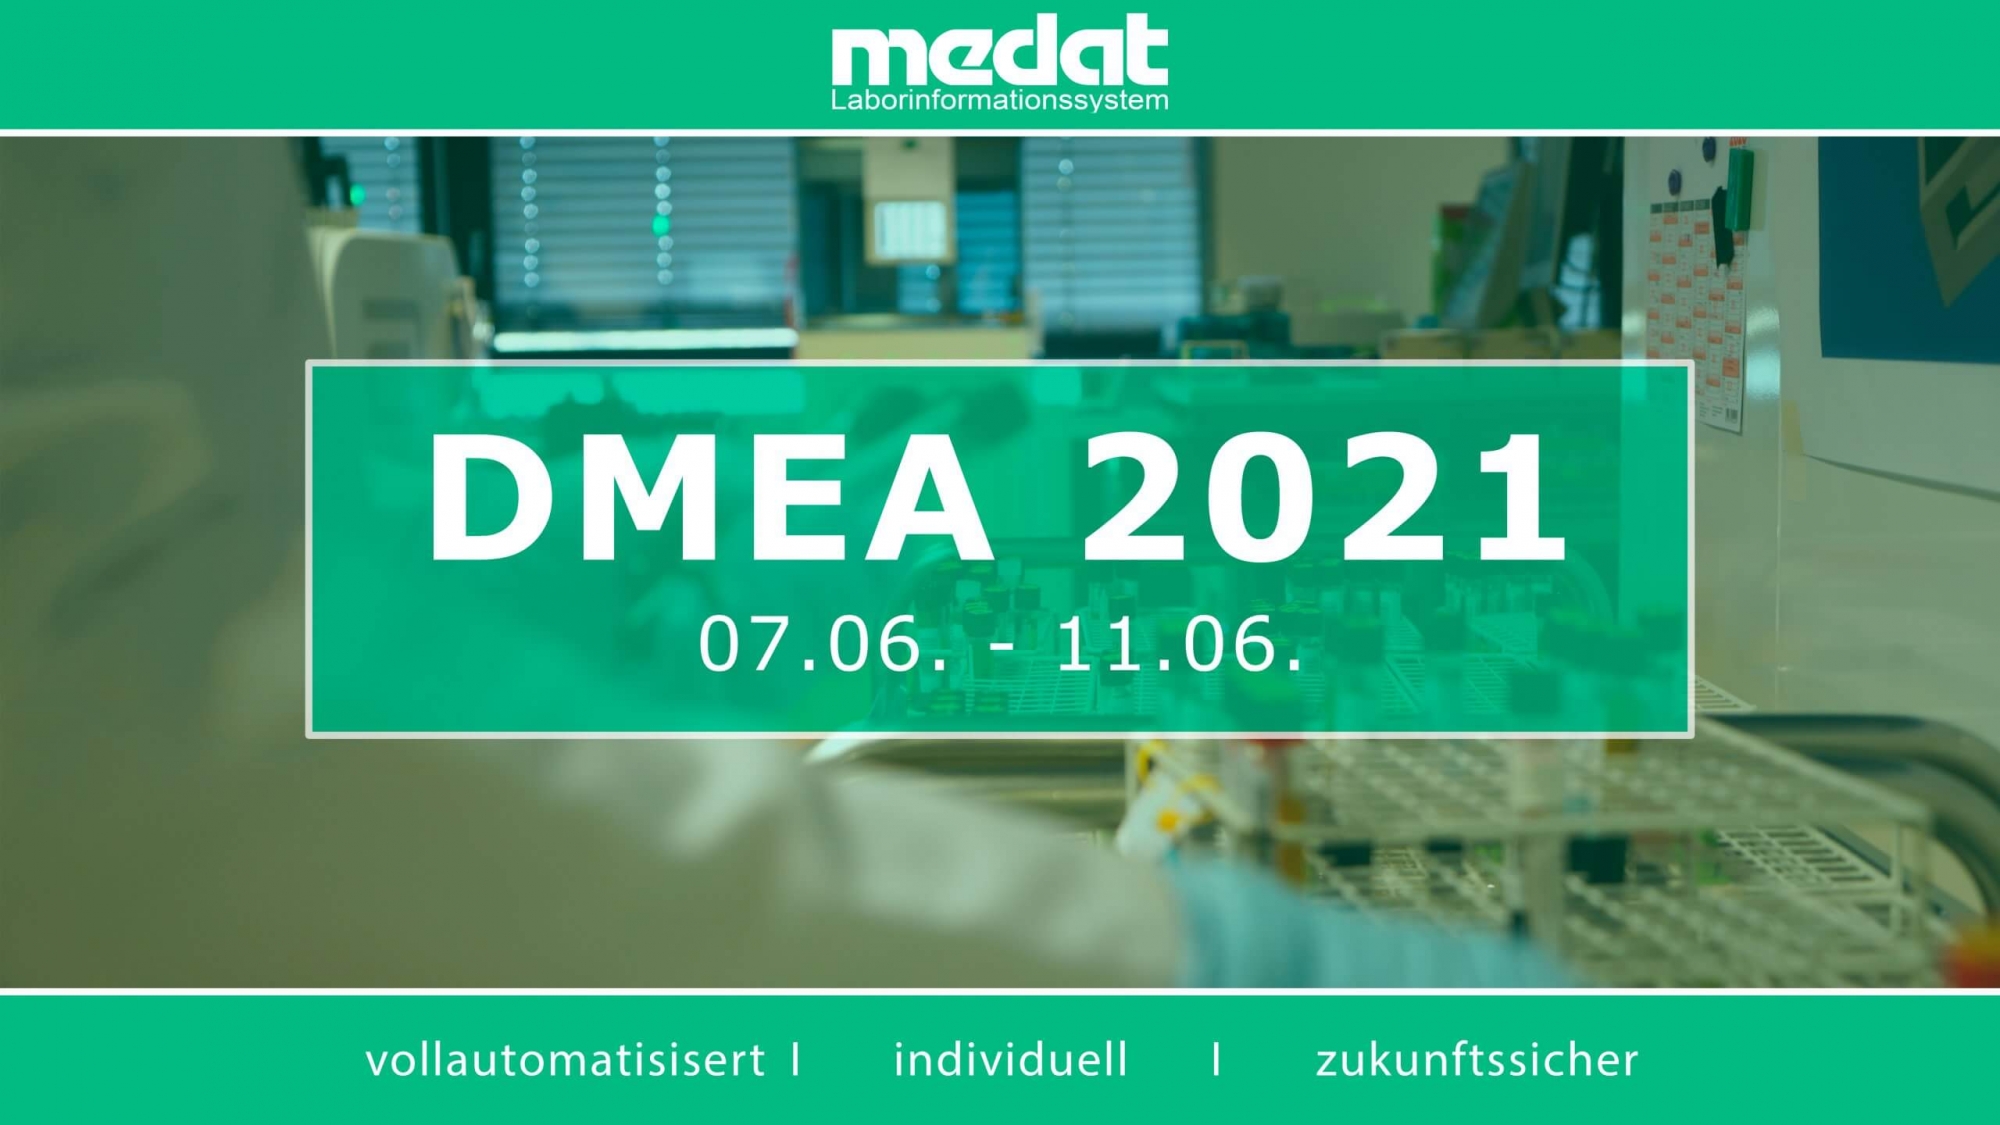 Im Bild befindet sich in der Mitte der Text DMEA 2021, 07.06 - 11.06 auf einem grünen Rechteck, im oberen Teil das Medat-Logo und im unteren Teil die Worte "Vollautomatisiert, individuell und zukunftssicher". Im Hintergrund ist ein Foto eines Labors.